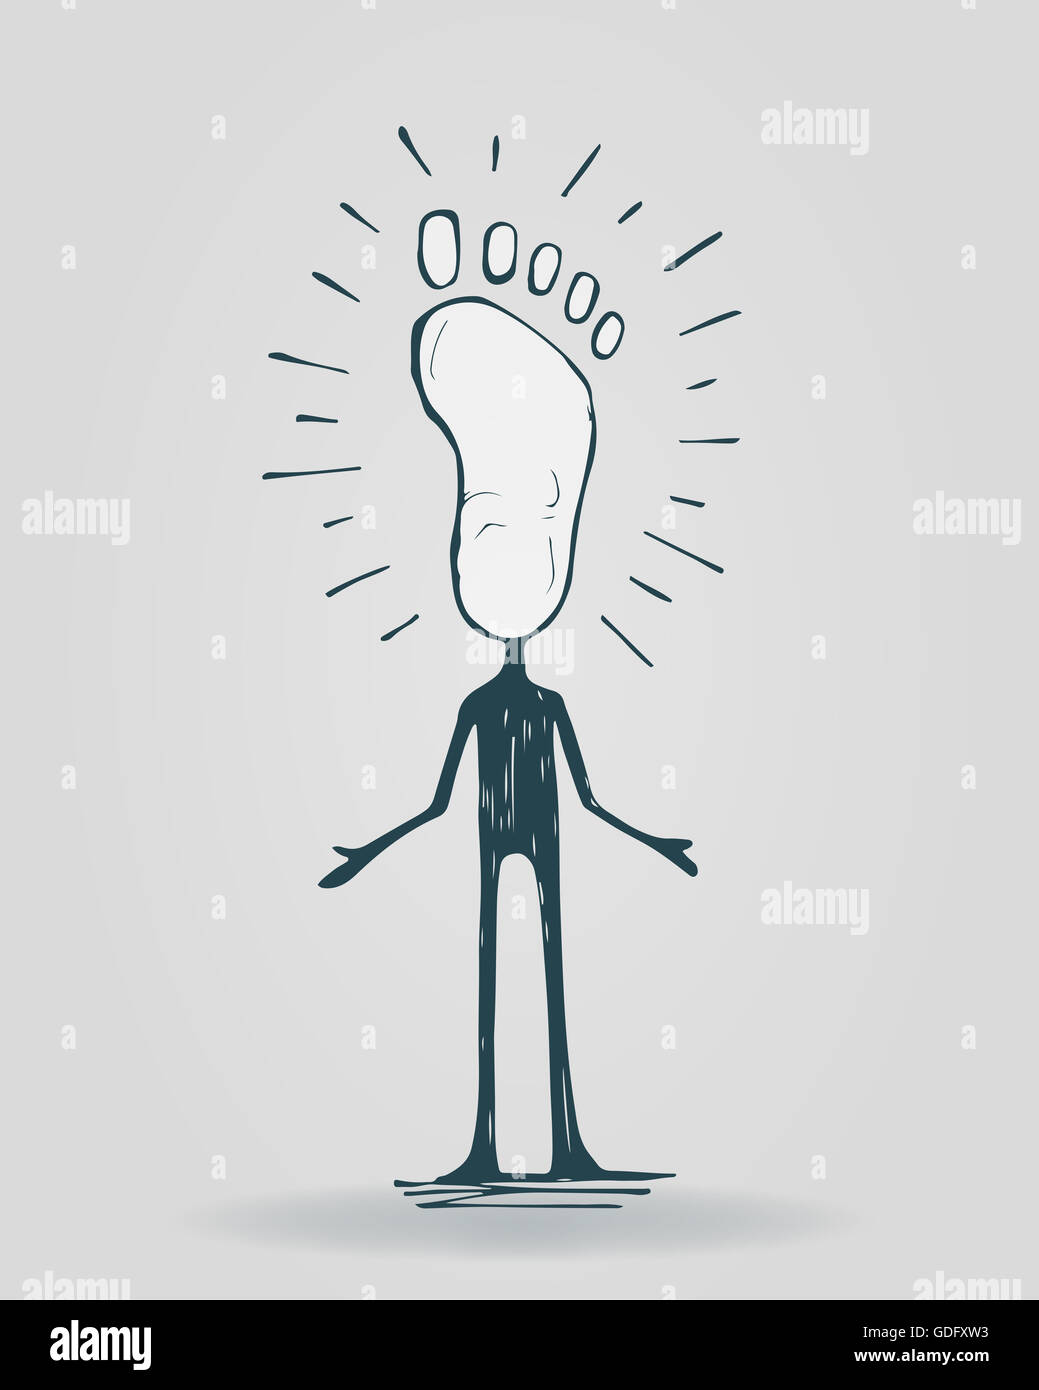 Disegnata a mano immagine o disegno di un cartone animato uomo con un piede al posto della testa, che rappresenta un pedone Foto Stock